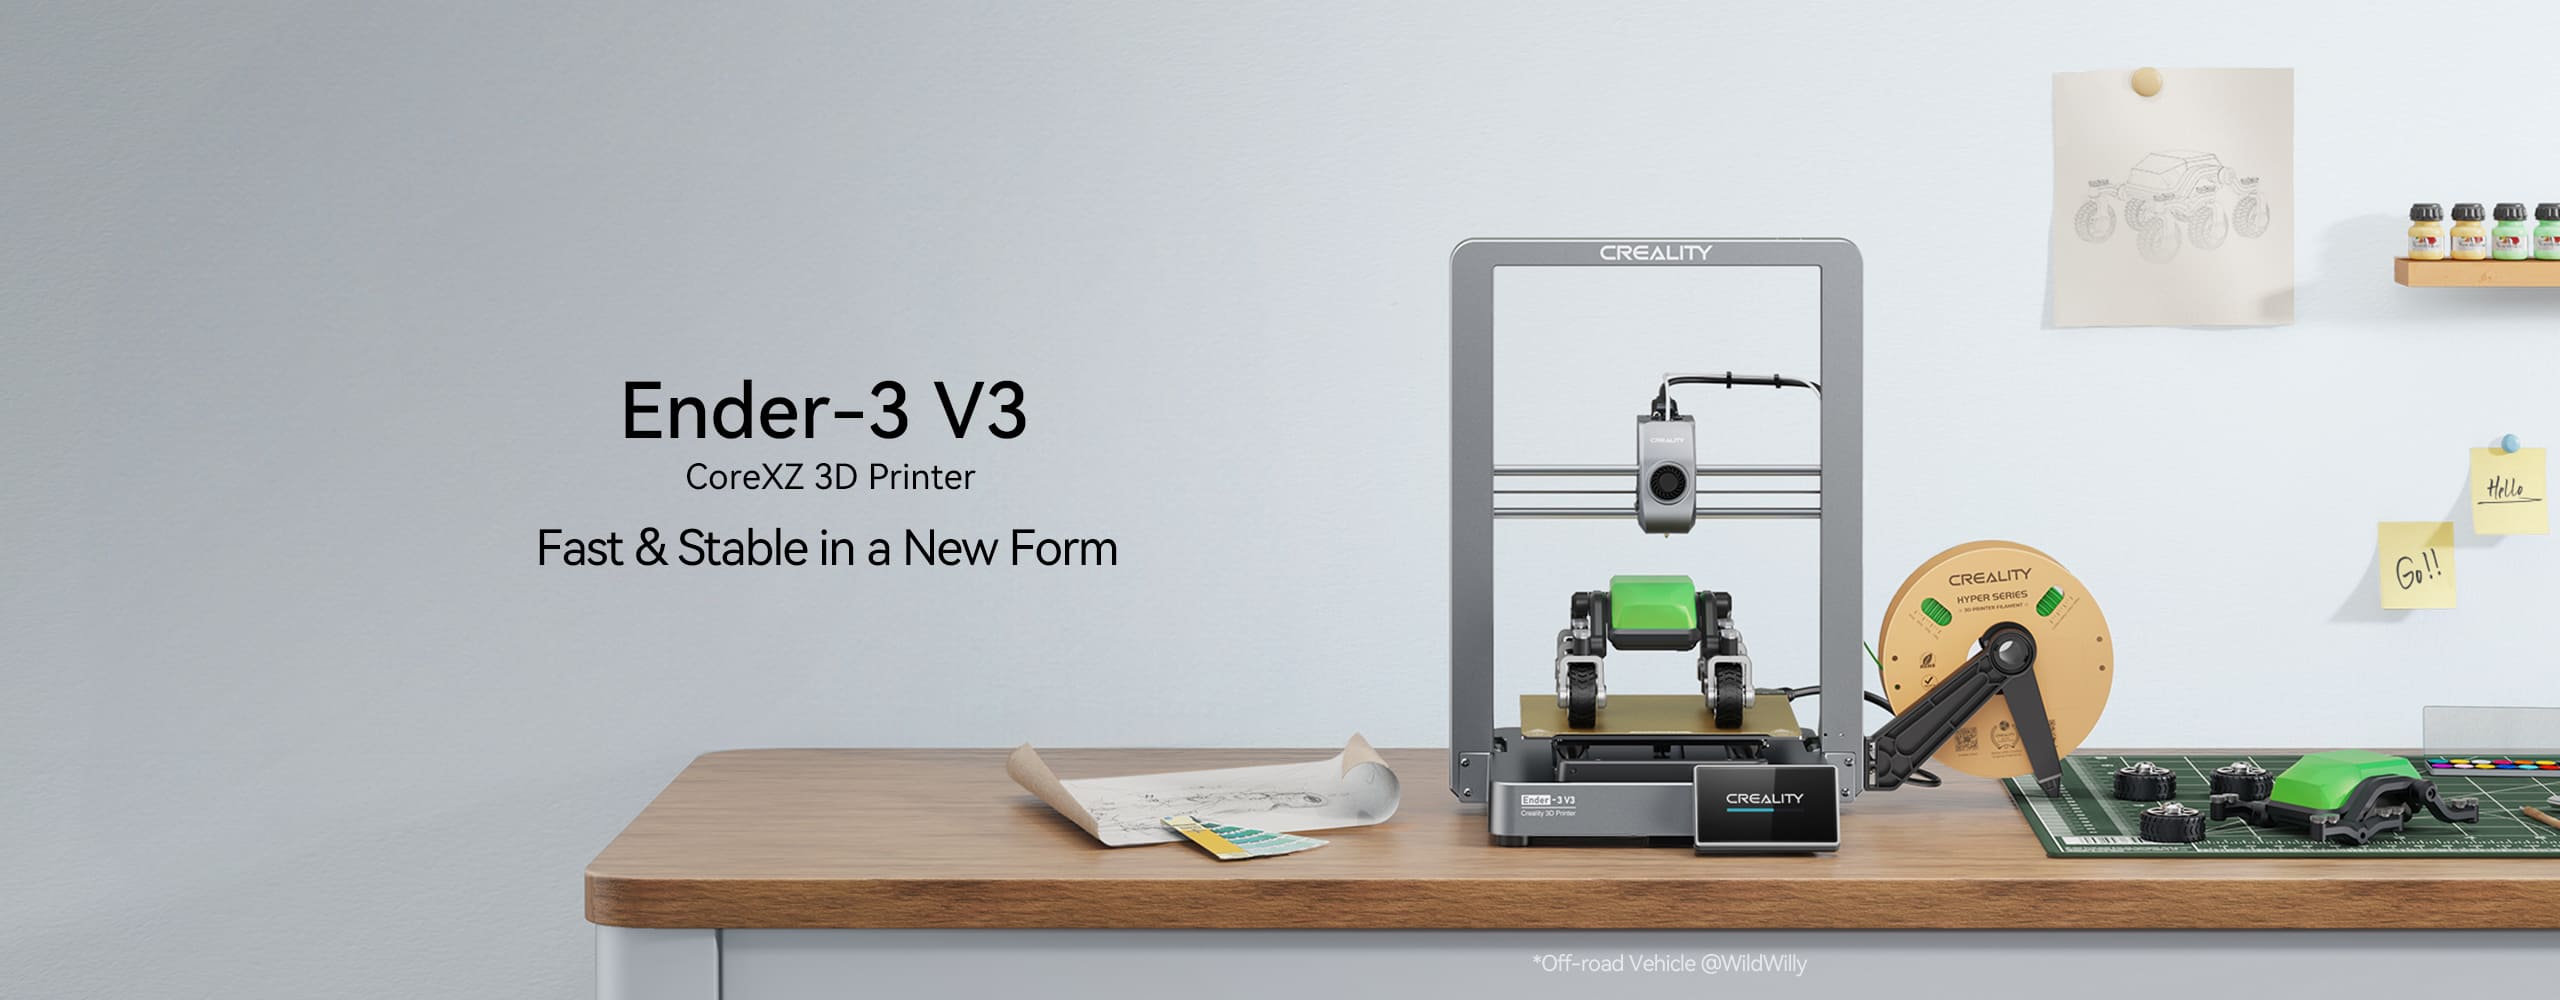 Creality 3D printer, Ender series 3D printer